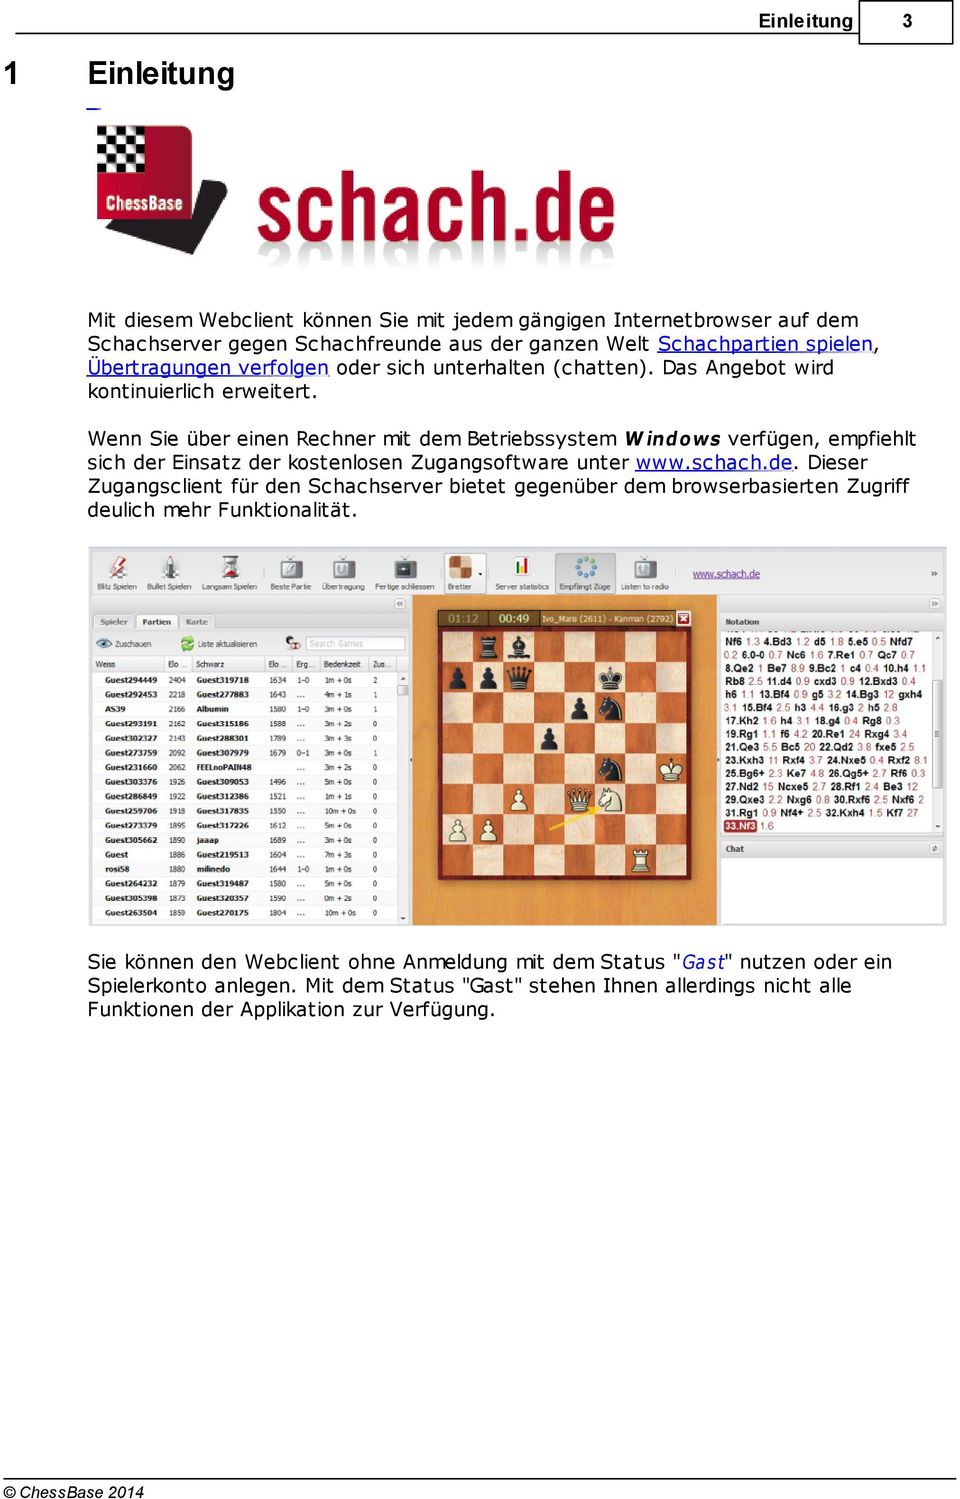 Wenn Sie über einen Rechner mit dem Betriebssystem W indo ws verfügen, empfiehlt sich der Einsatz der kostenlosen Zugangsoftware unter www.schach.de. Dieser Zugangsclient für den Schachserver bietet gegenüber dem browserbasierten Zugriff deulich mehr Funktionalität.